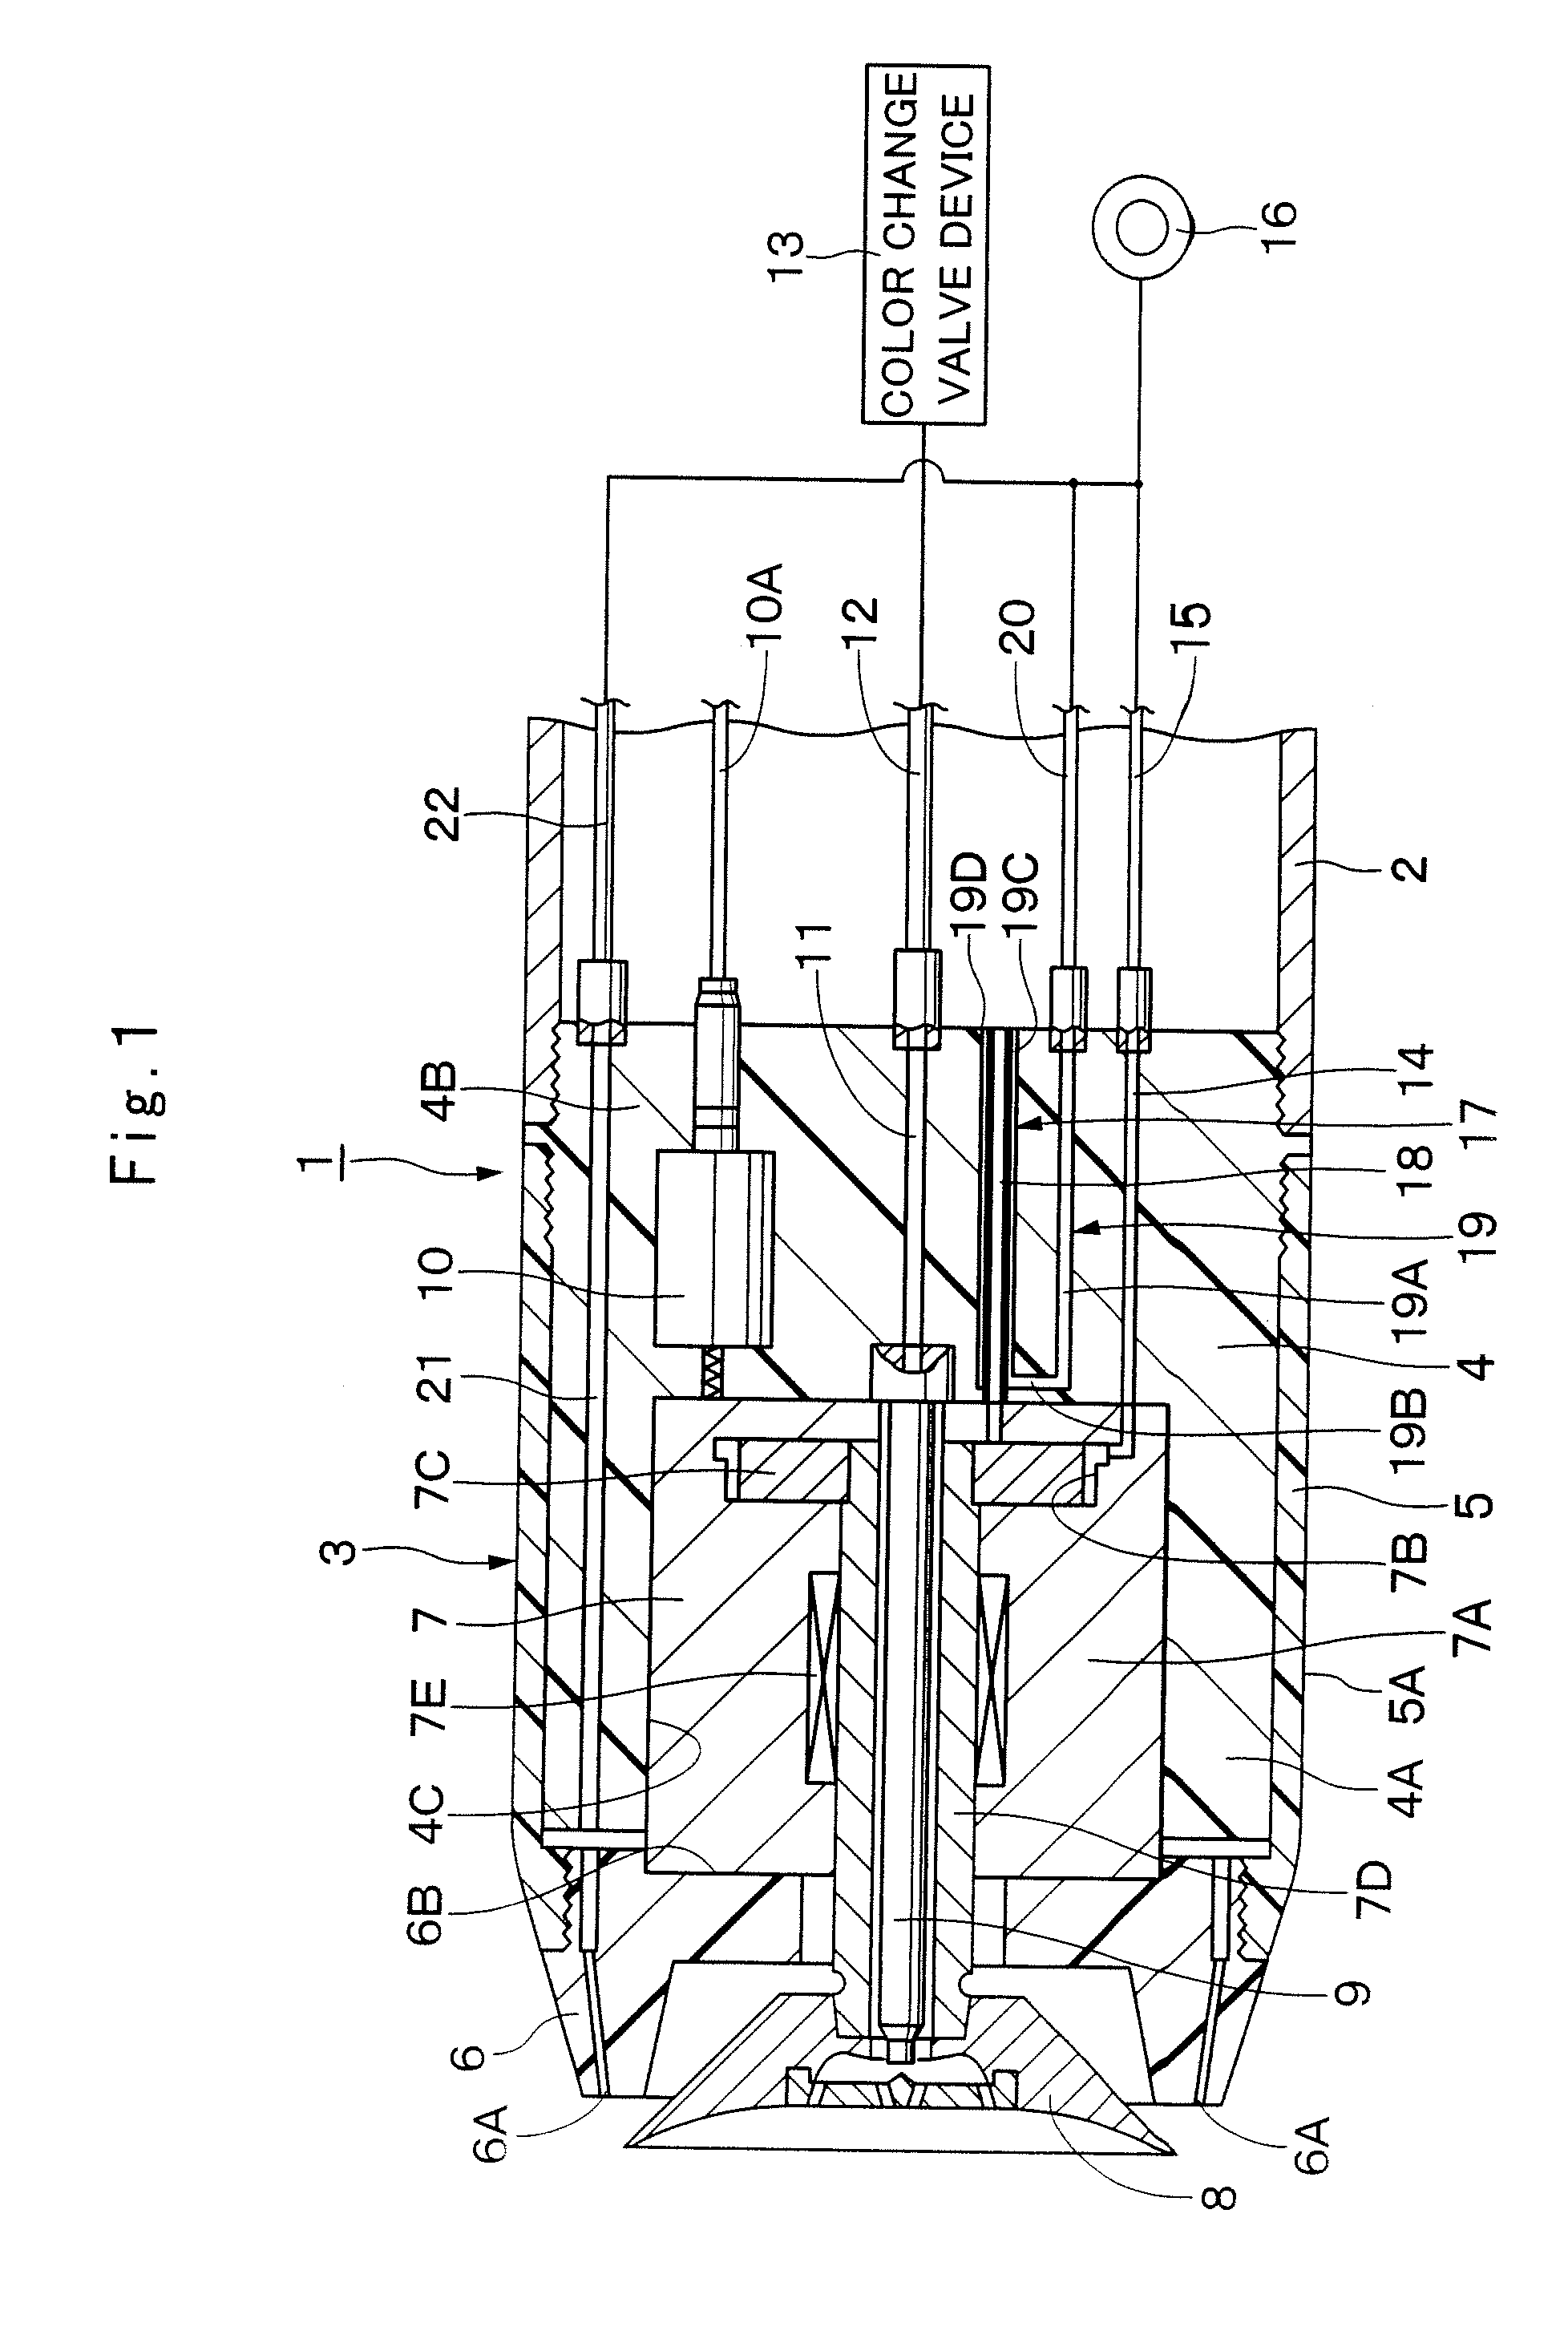 Rotary atomizing-head type coating machine